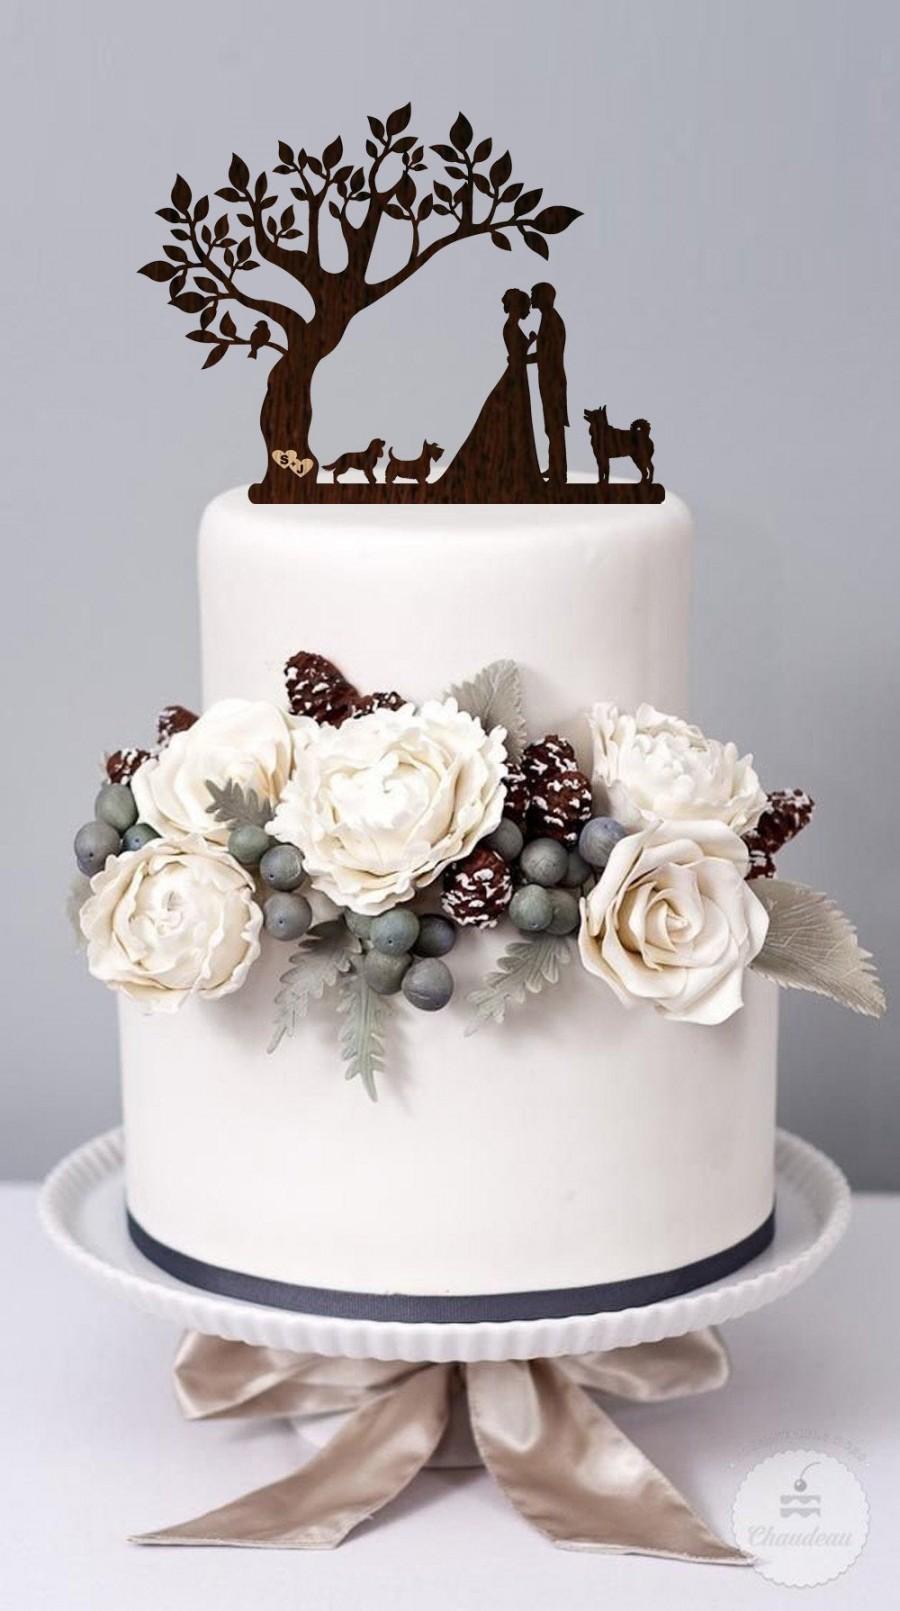 زفاف - Wedding cake topper with Dog Bride Groom Silhouette Family Wedding Cake Topper Mr and Mrs with Вog Сustomized Еopper Couple Kissing with dog